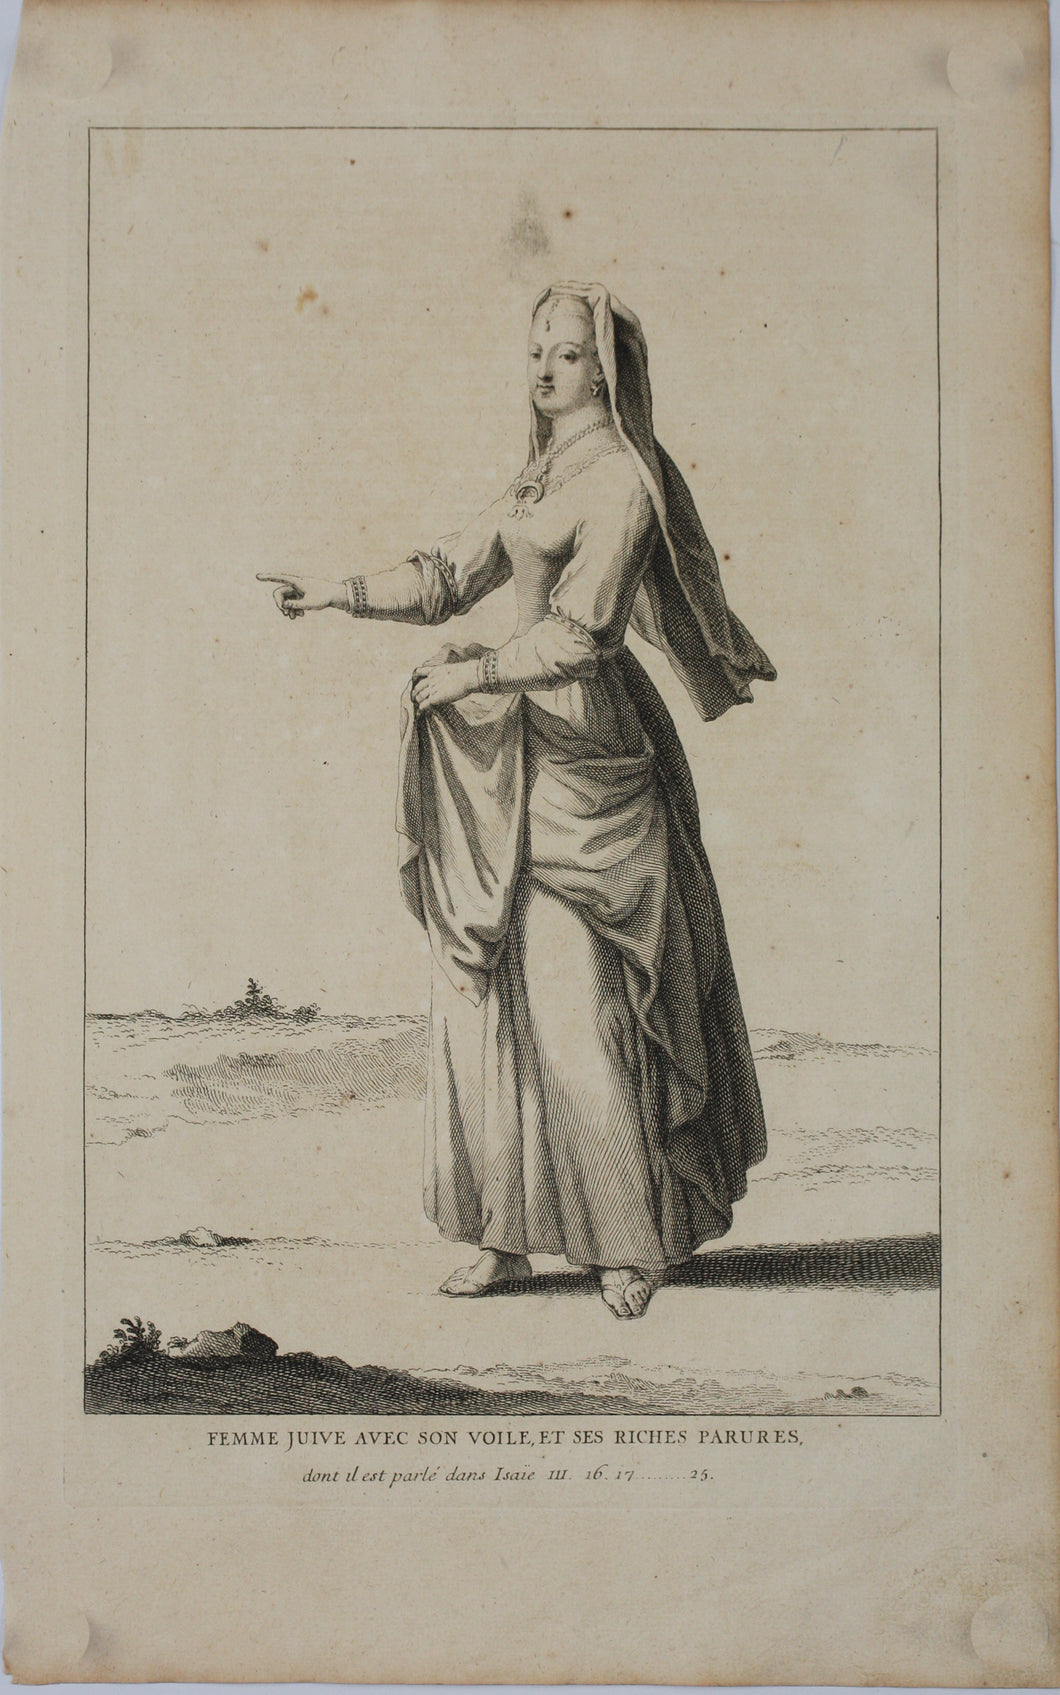 Augustin Calmet. Femme Juive avec son voile, et ses riches parures. Engraving. 1722.